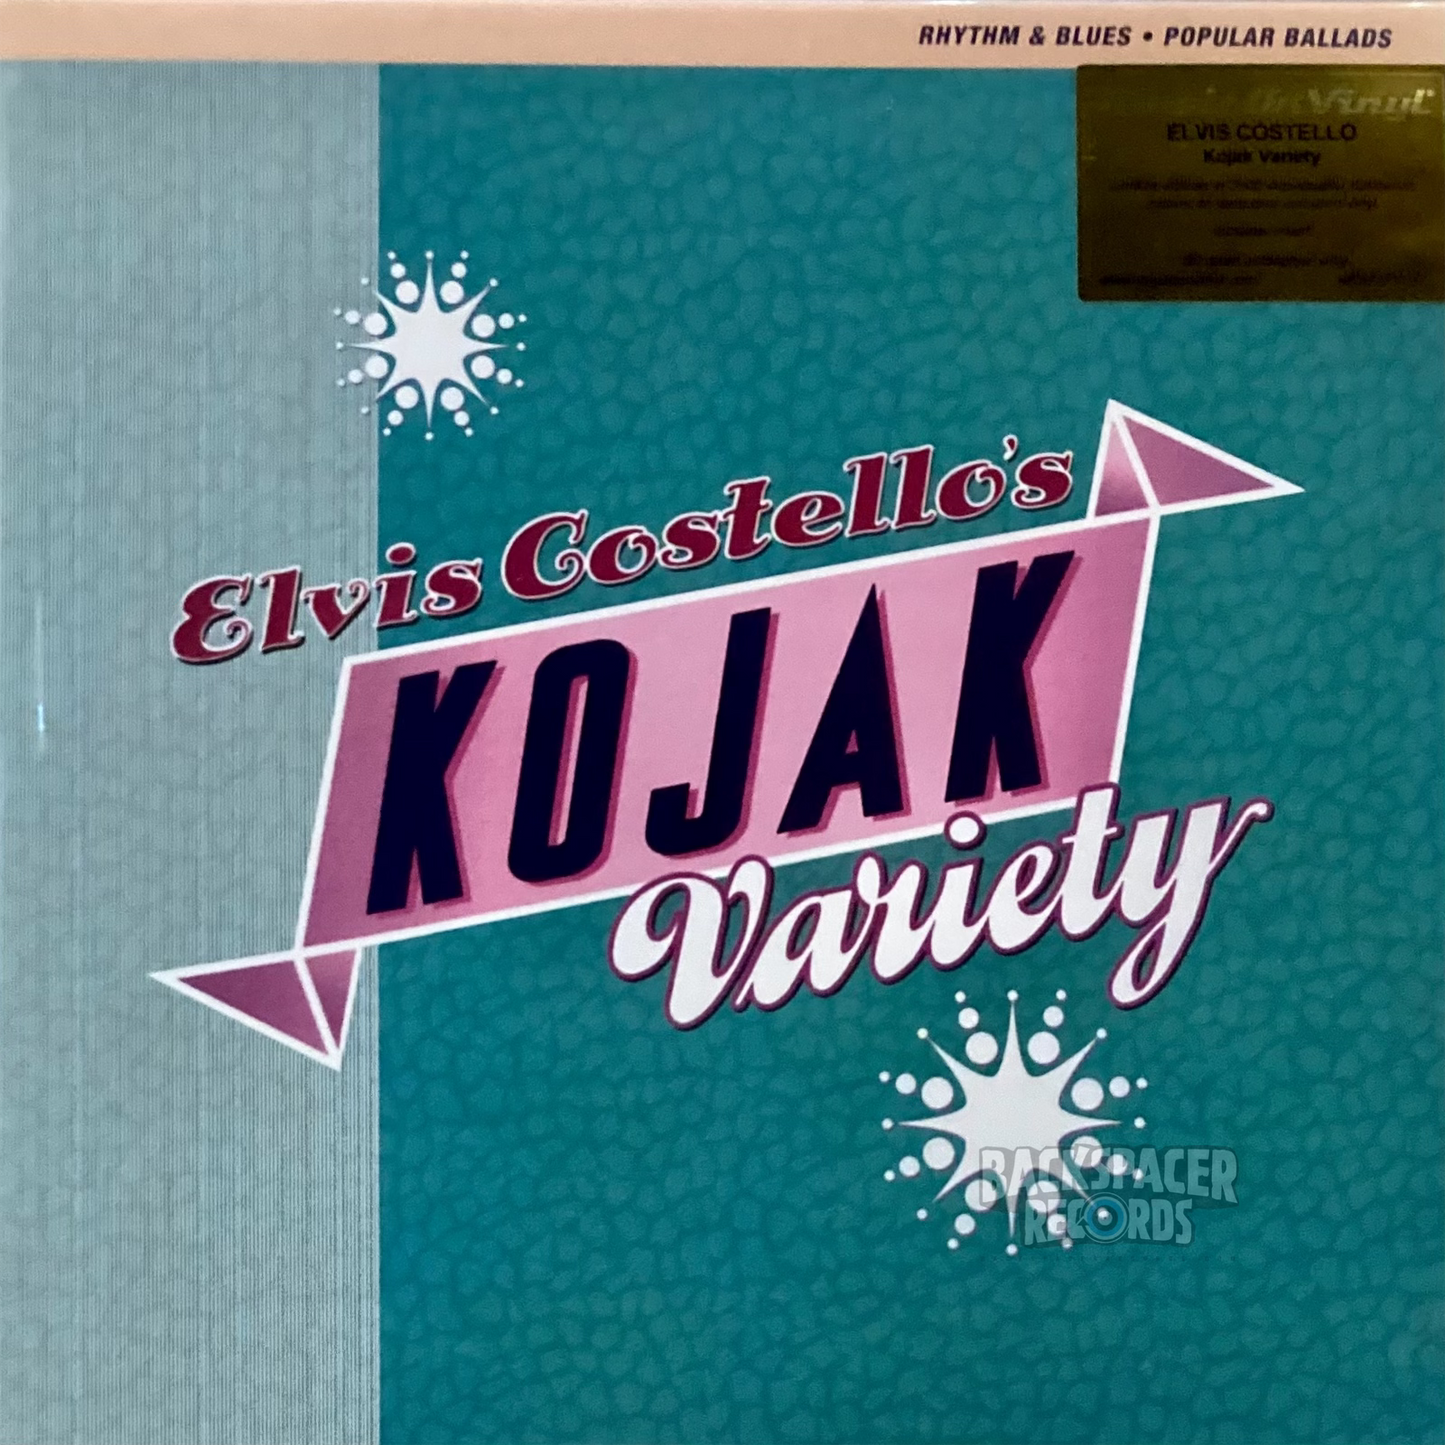 Elvis Costello – Elvis Costello's Kojak Variety LP (MOV)